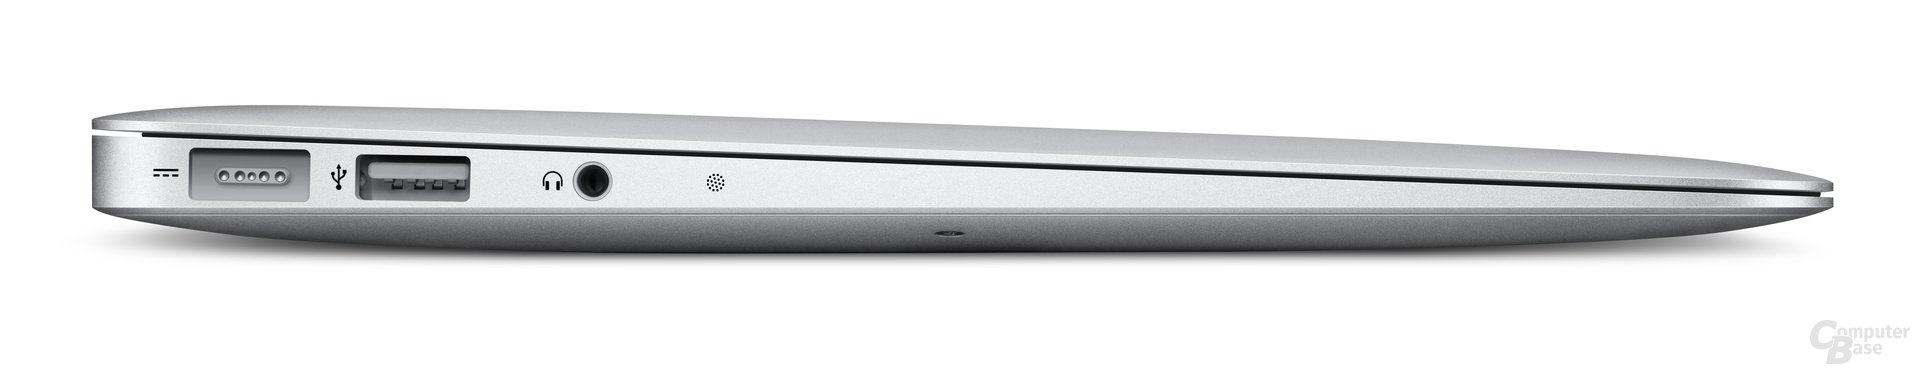 MacBook Air: 11,6-Zoll-Modell von der Seite